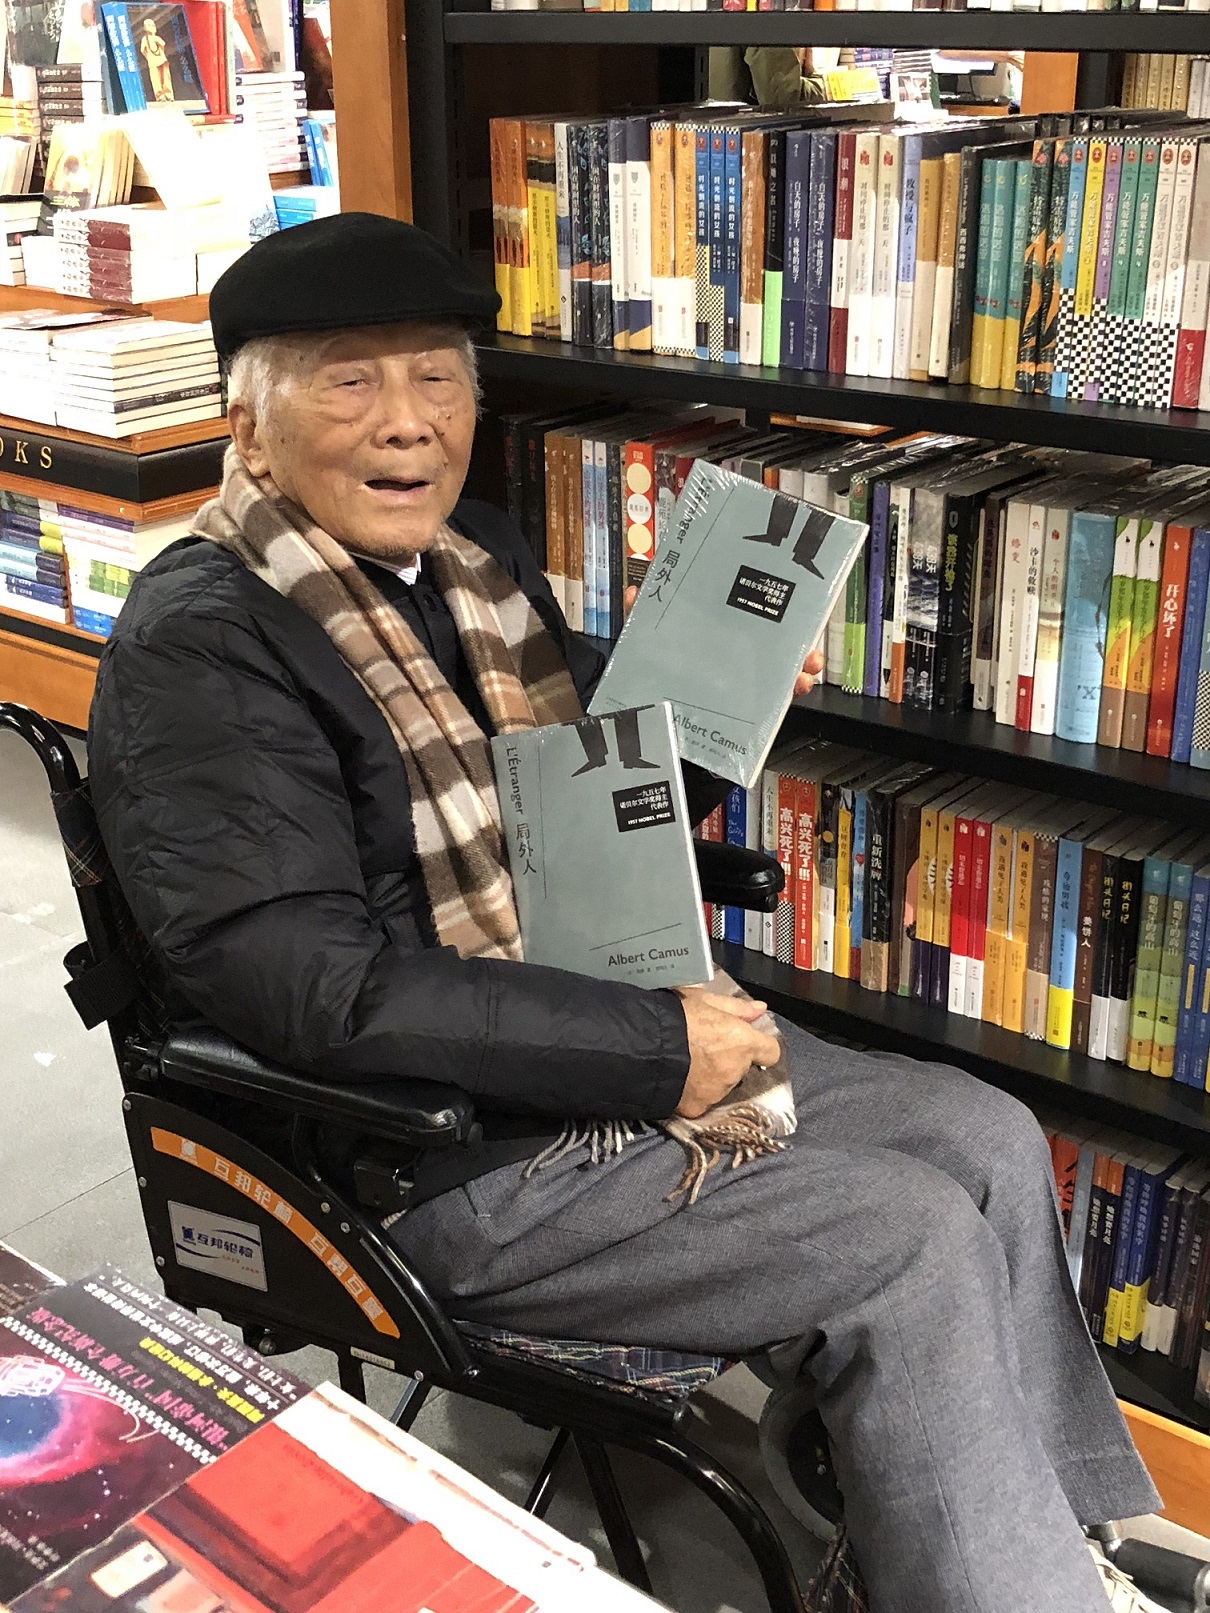 2018年11月24日柳鸣九在西西弗书店的书架上看到了由他翻译的加缪名著《局外人》。江胜信 摄.jpg